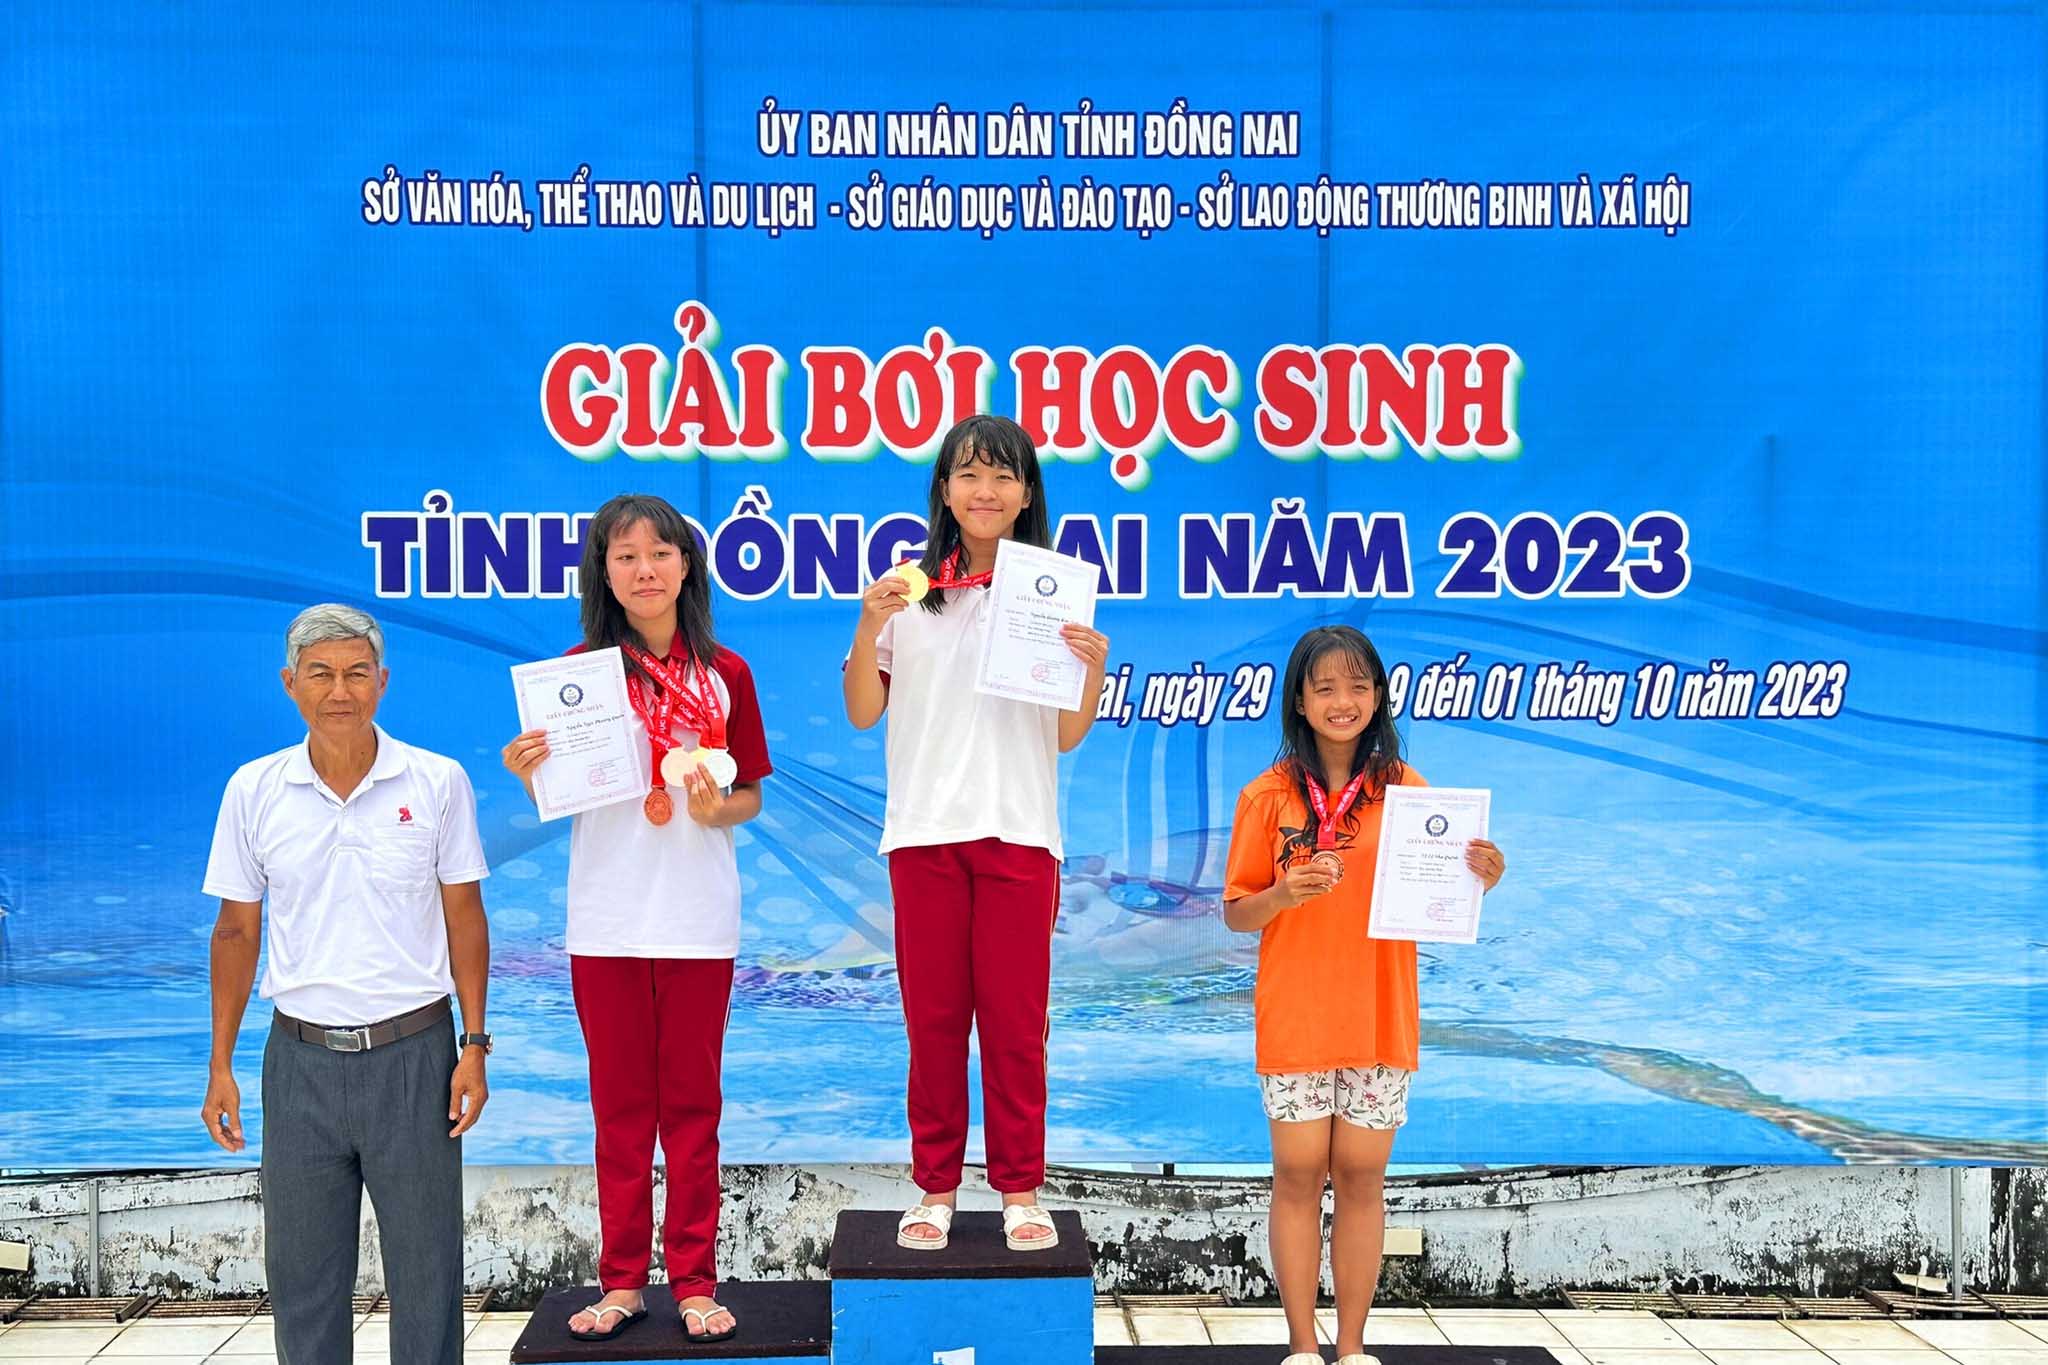 Chúc mừng các em học sinh đạt thành tích cao tại Giải bơi học sinh tỉnh Đồng Nai năm 2023